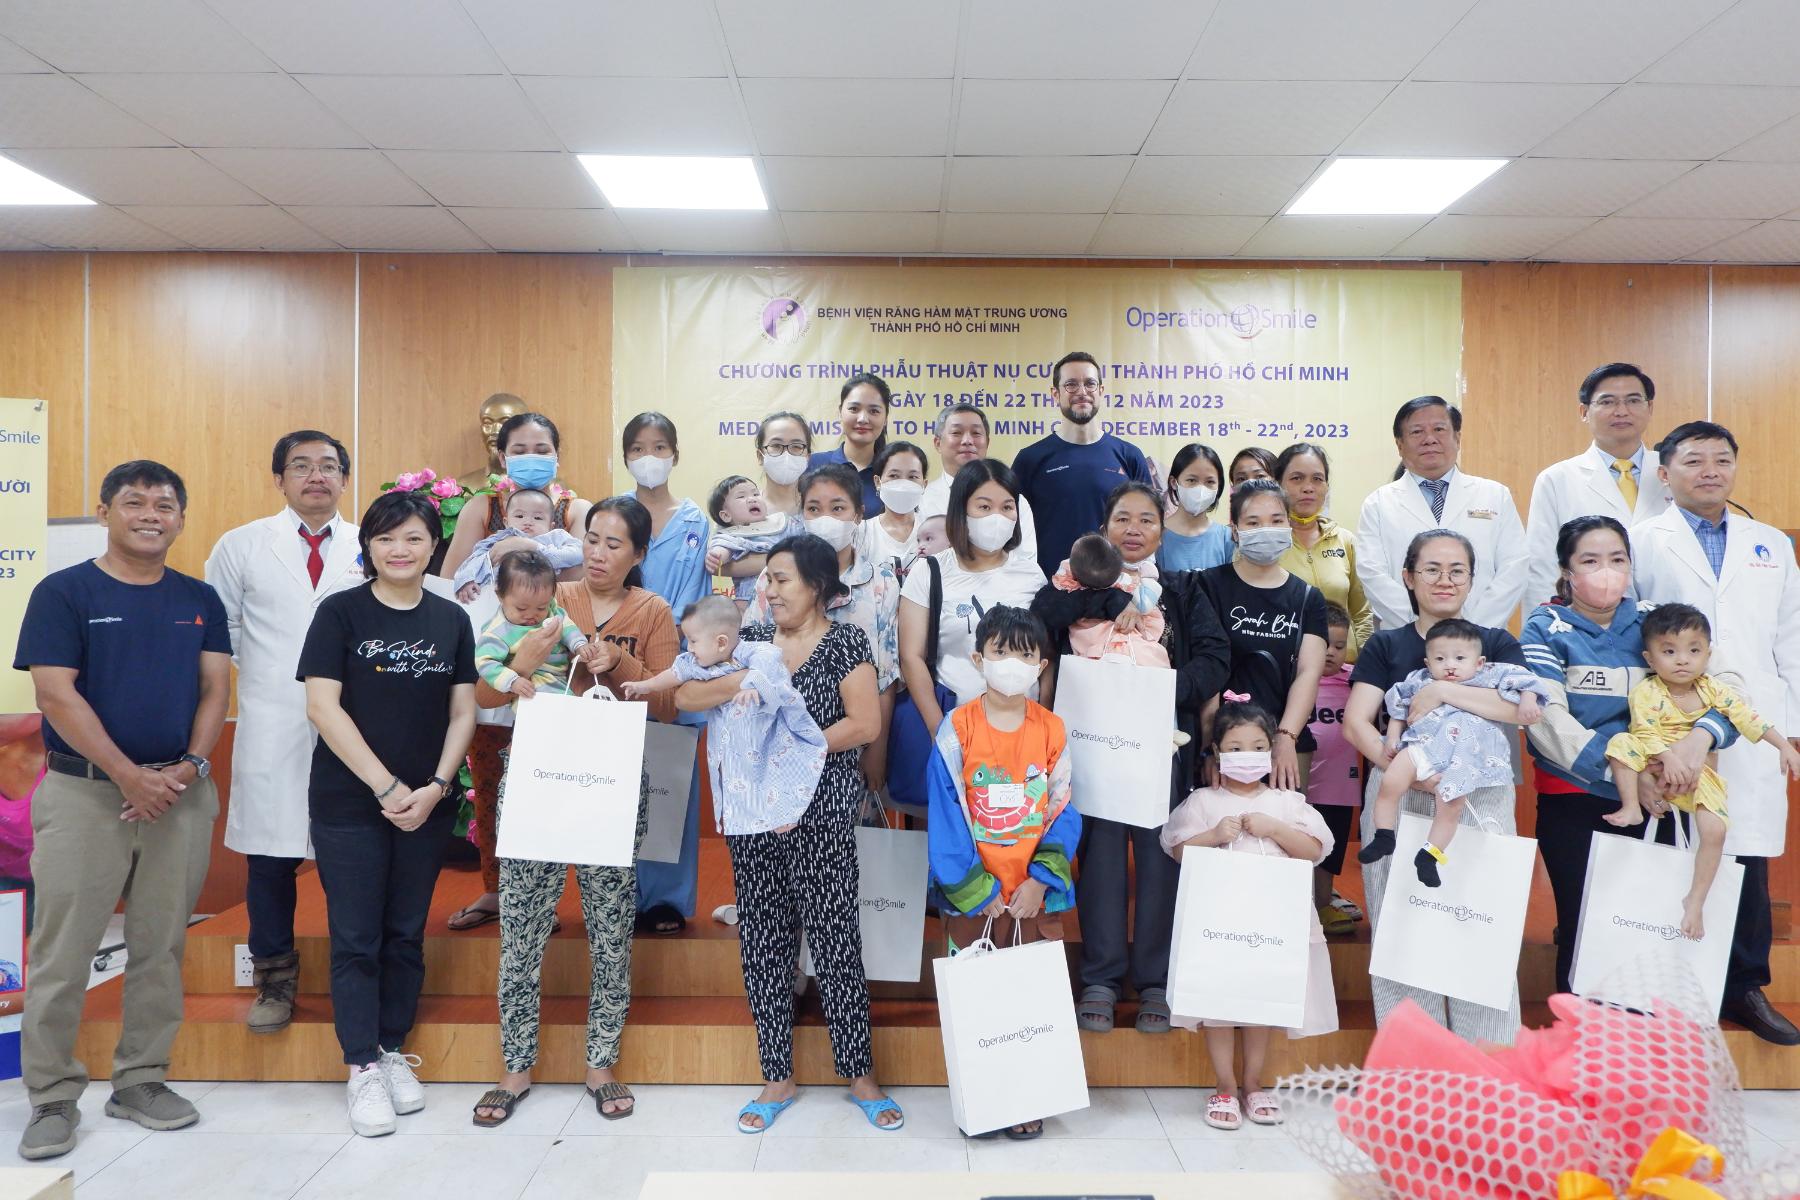 Hoạt động trao tặng nụ cười tạo nên ý nghĩa tích cực không chỉ với các trẻ nhỏ mà còn với chính bản thân người tham gia Sika Việt Nam đồng hành cùng Operation Smile 13 năm trao tặng những nụ cười